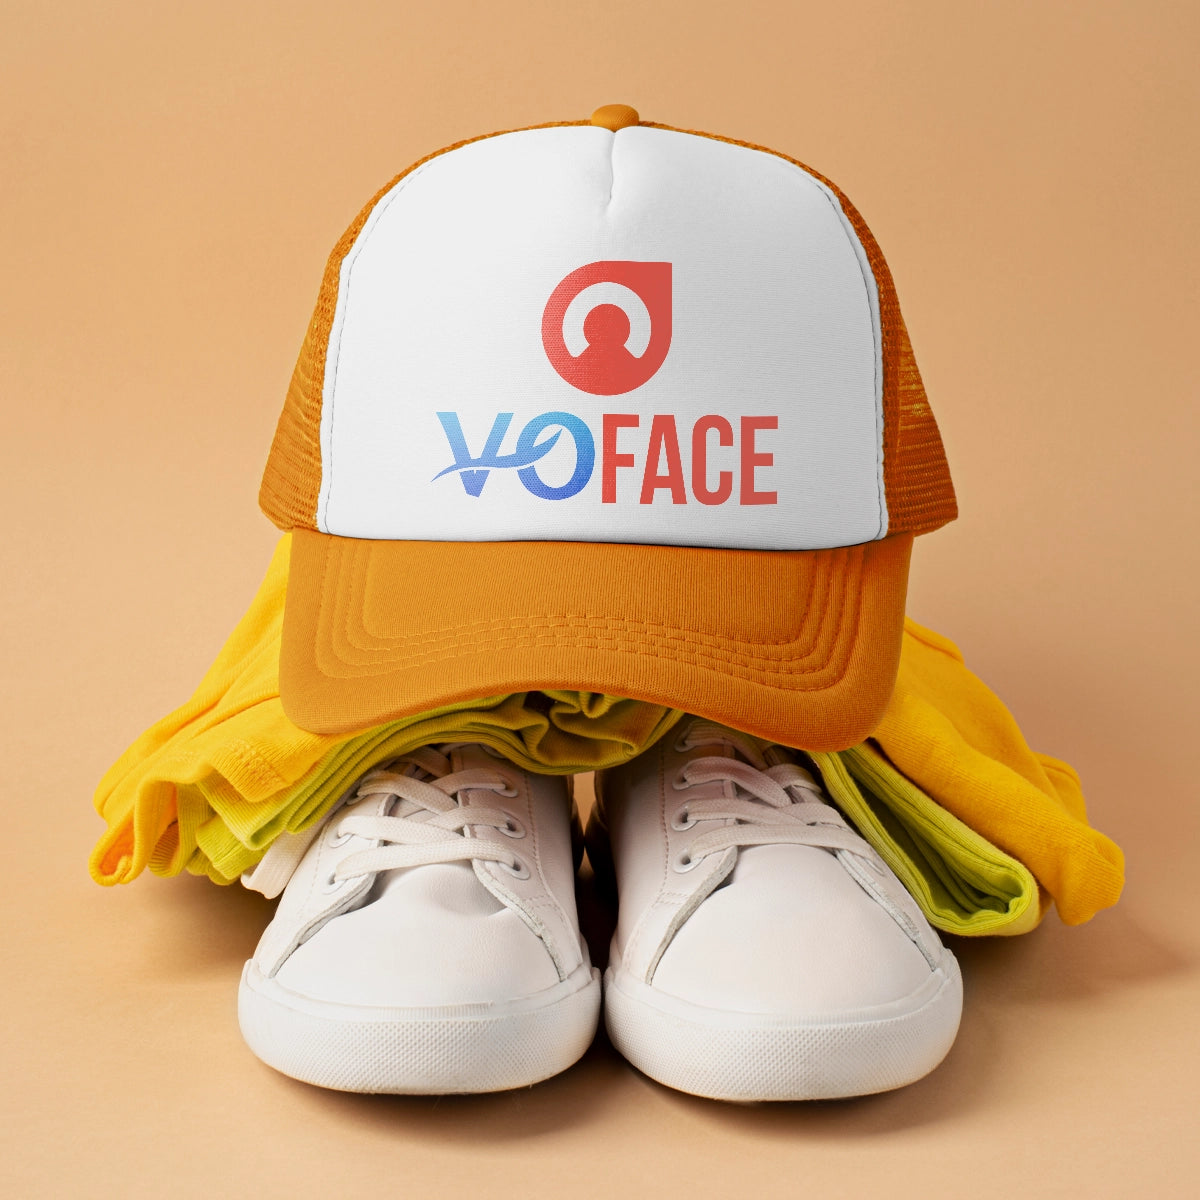 voface.com